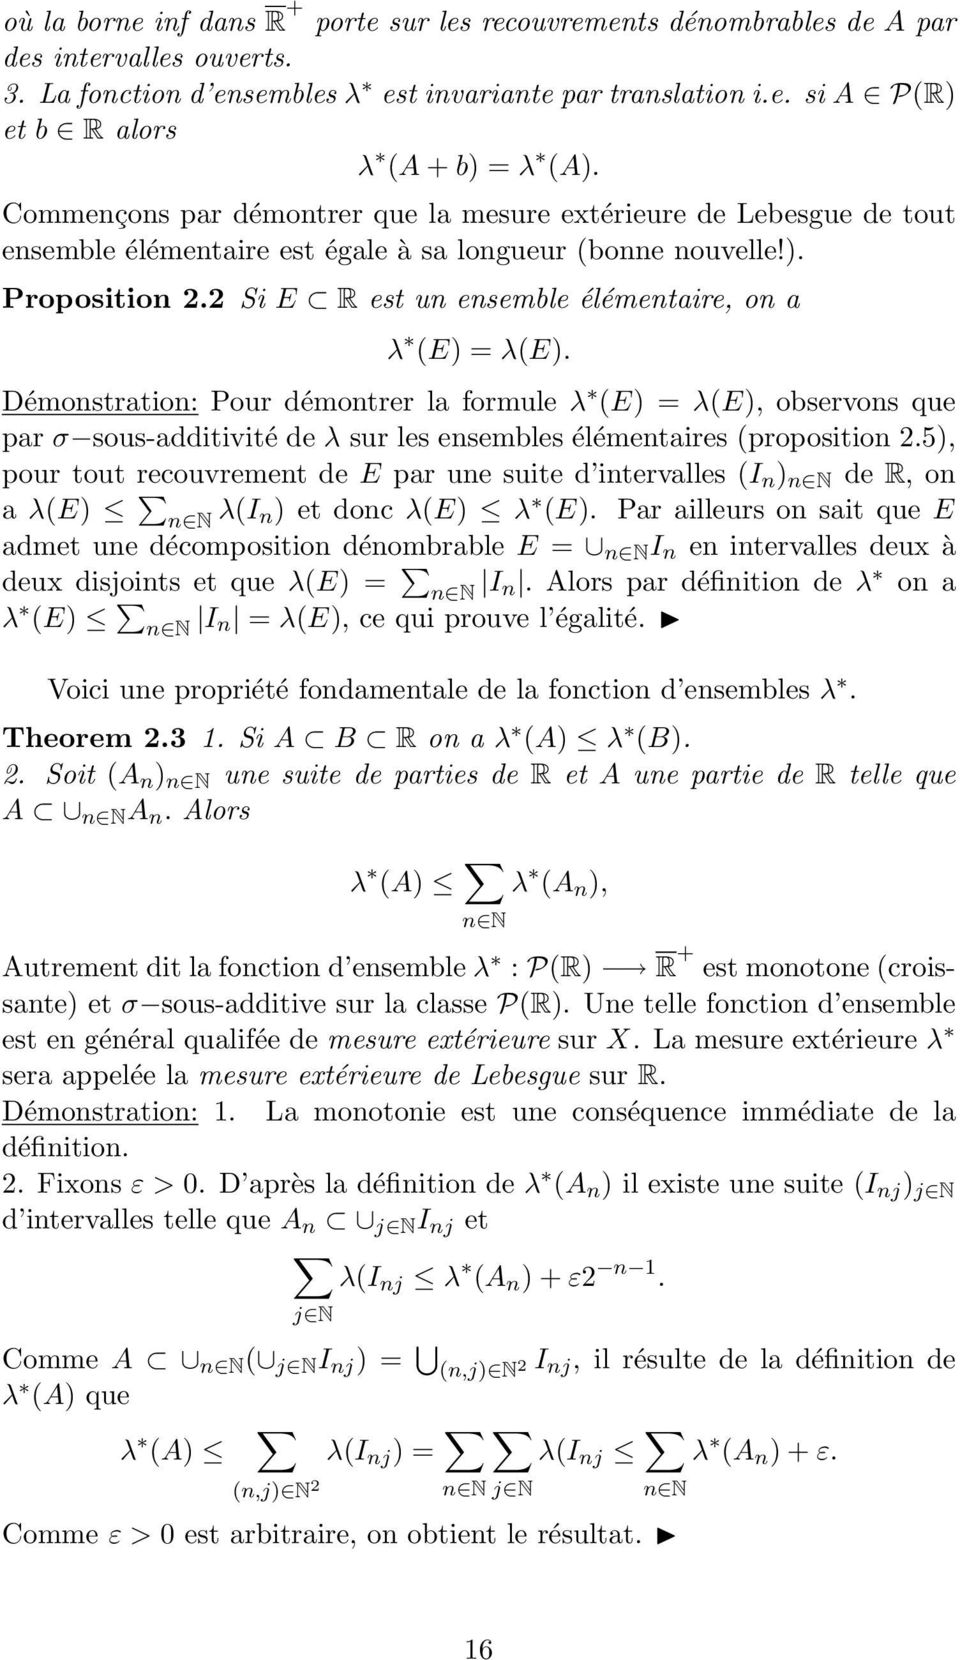 2 Si E R est un ensemble élémentaire, on a λ (E) = λ(e). Démonstration: Pour démontrer la formule λ (E) = λ(e), observons que par σ sous-additivité de λ sur les ensembles élémentaires (proposition 2.